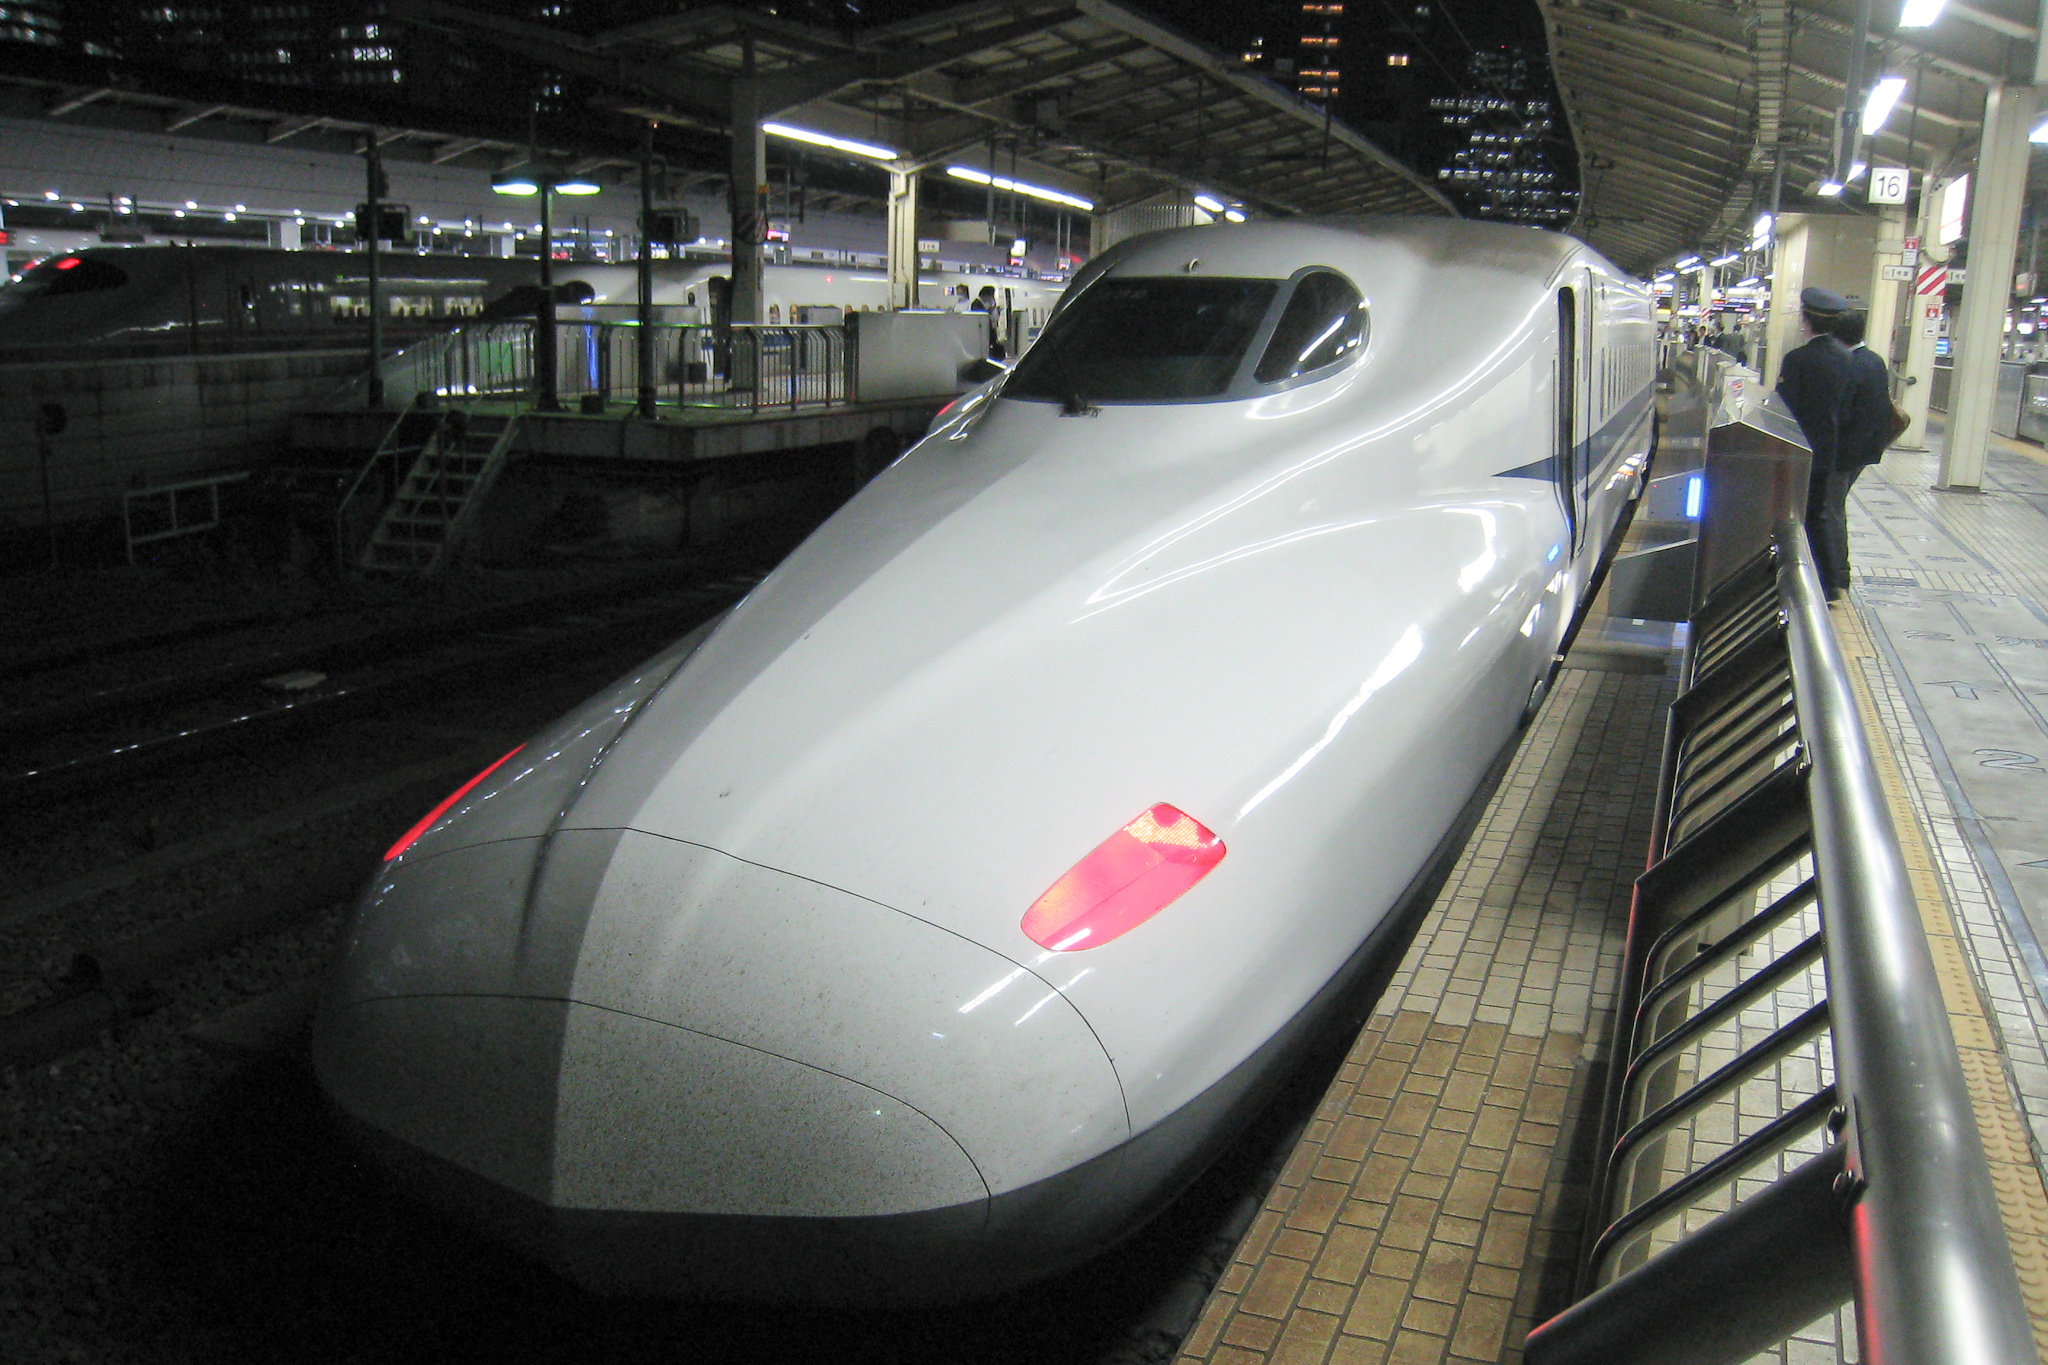 a sleek silver train sits at the platform at night